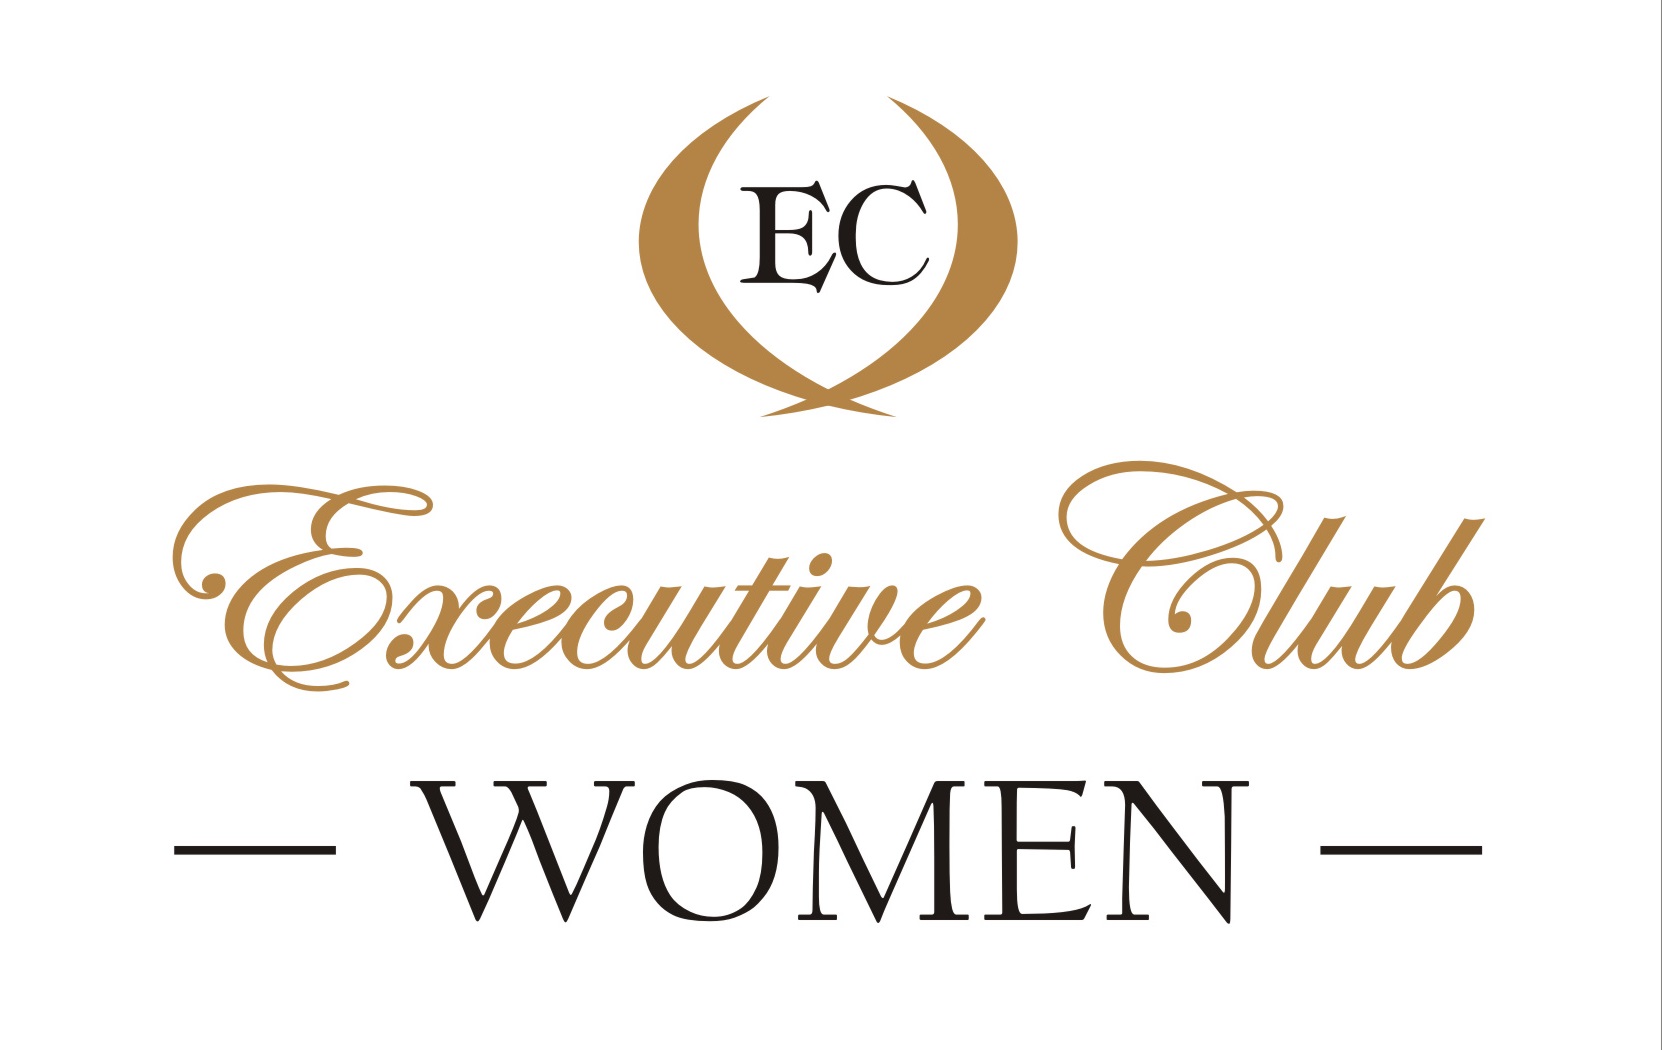 Wystartował projekt Executive Club Women